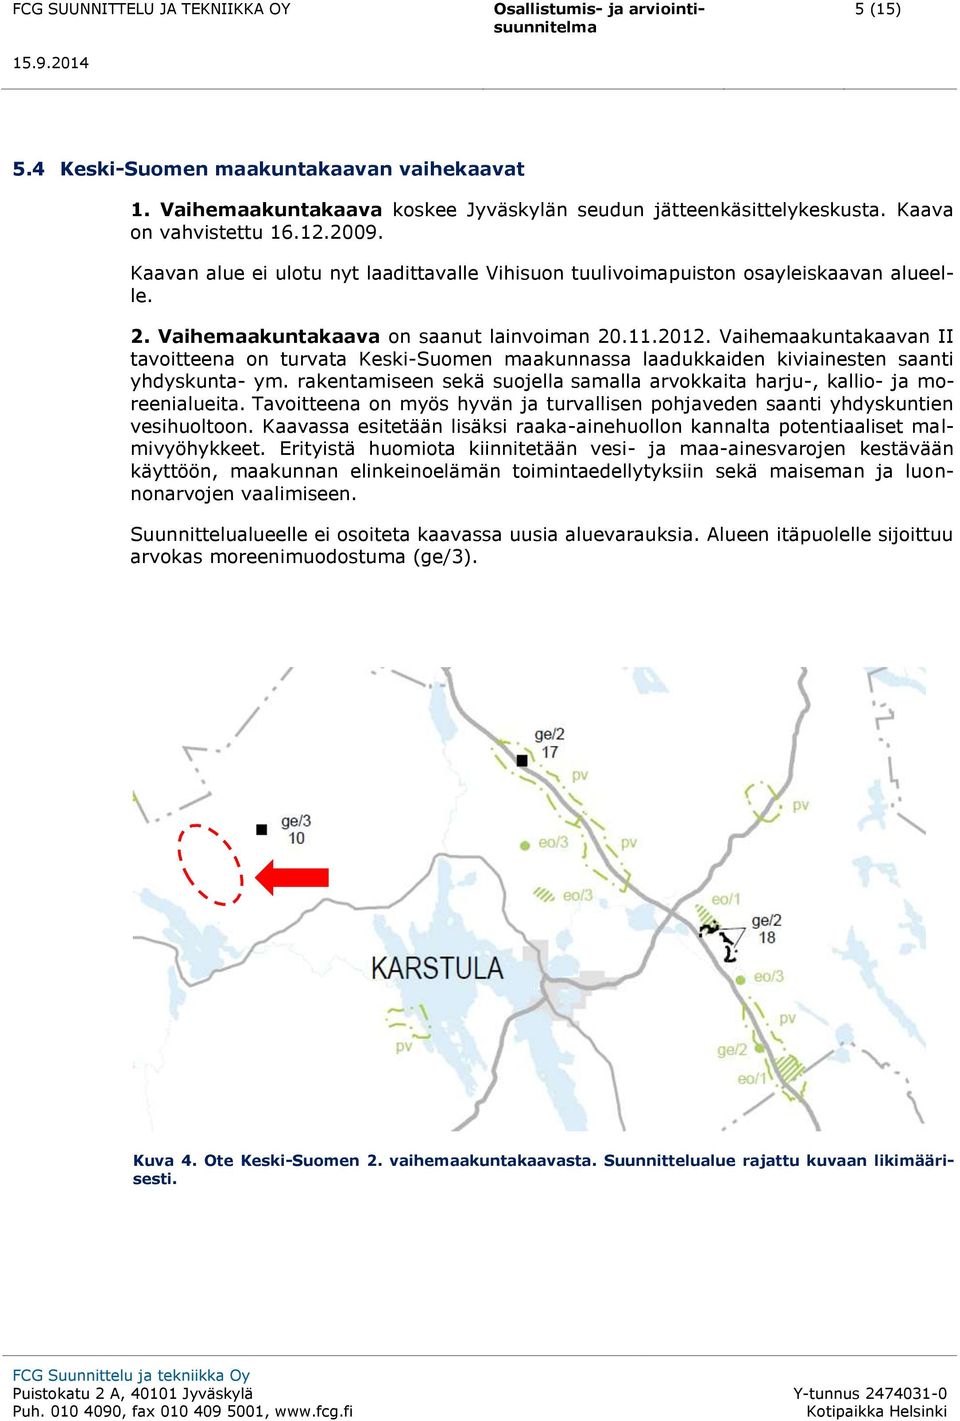 Vaihemaakuntakaavan II tavoitteena on turvata Keski-Suomen maakunnassa laadukkaiden kiviainesten saanti yhdyskunta- ym.